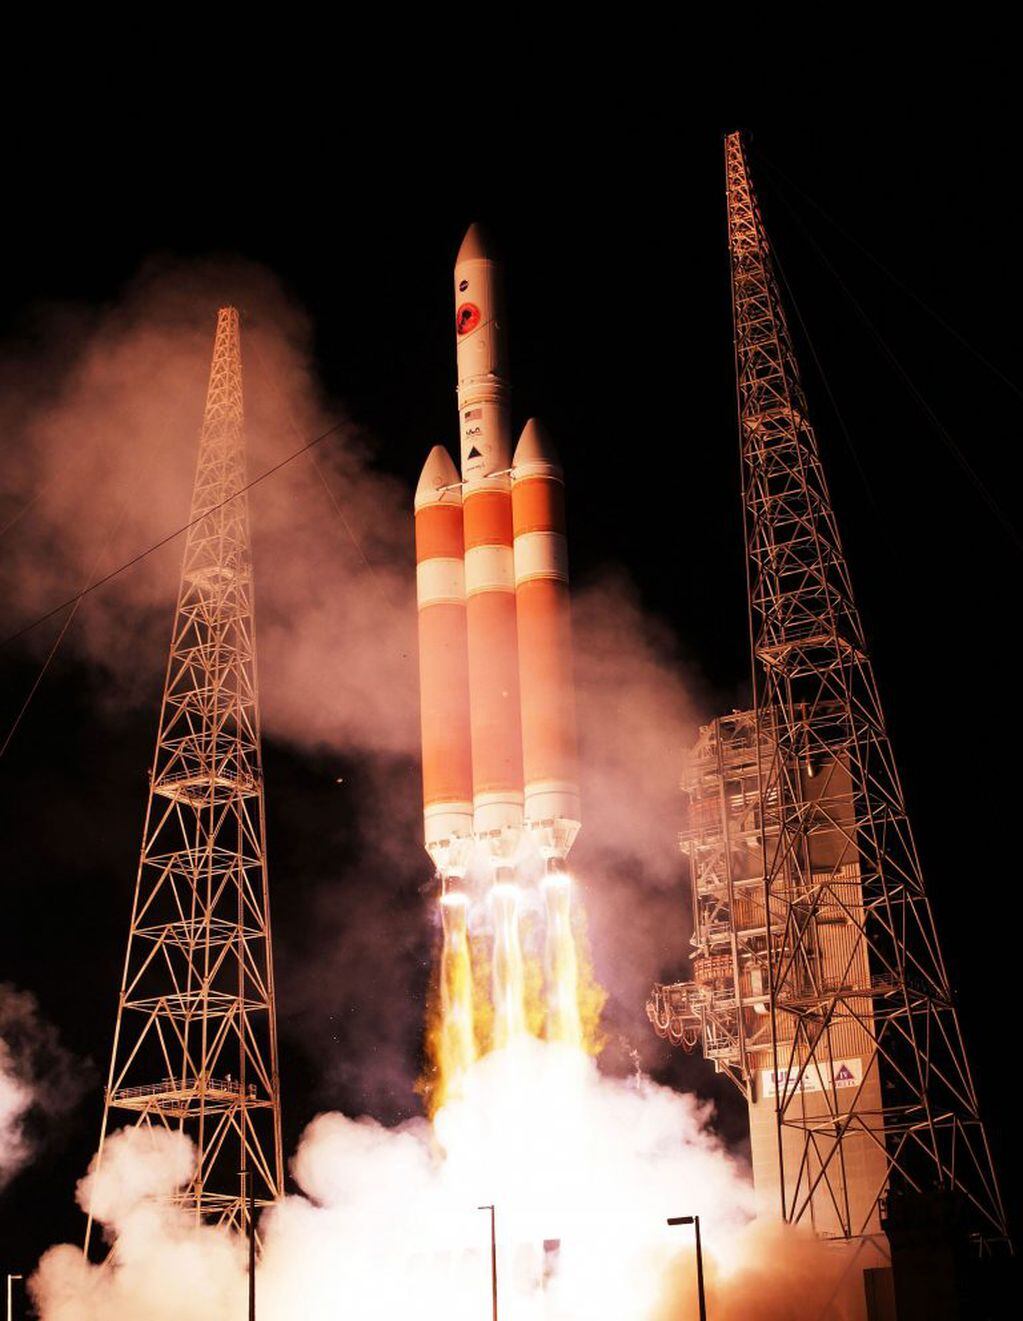 El esplendoroso lanzamiento del cohete Delta IV Heavy portador de la sonda Parker, desde la Plataforma 36 de la base de la Fuerza Aérea de Estados Unidos ubicada en Cabo Cañaveral. Minutos después, la sonda se separó iniciando su viaje de 7 años con destino al Sol. Alimentada por energía solar, llegará a alcanzar los 692 mil km/h, velocidad récord para una nave espacial.